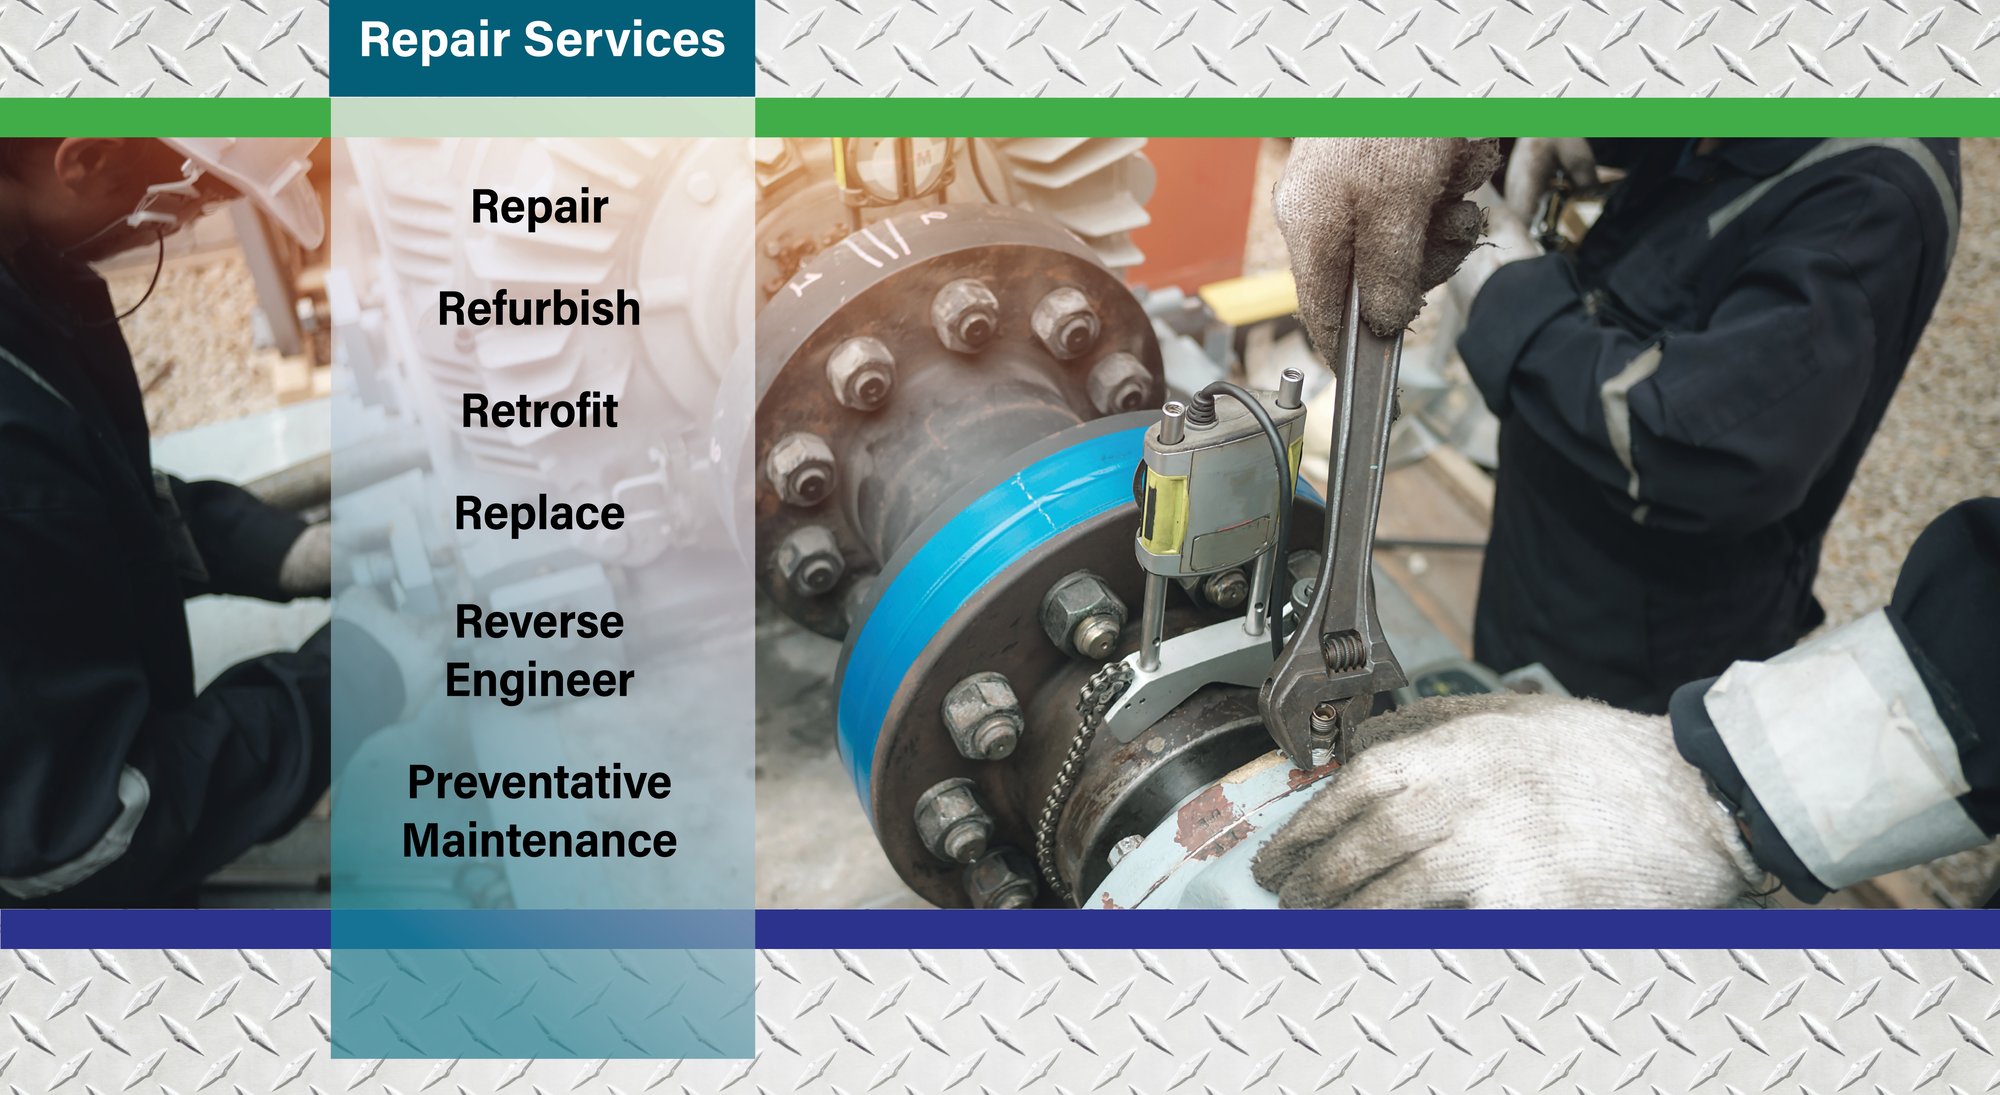 Service and repair image